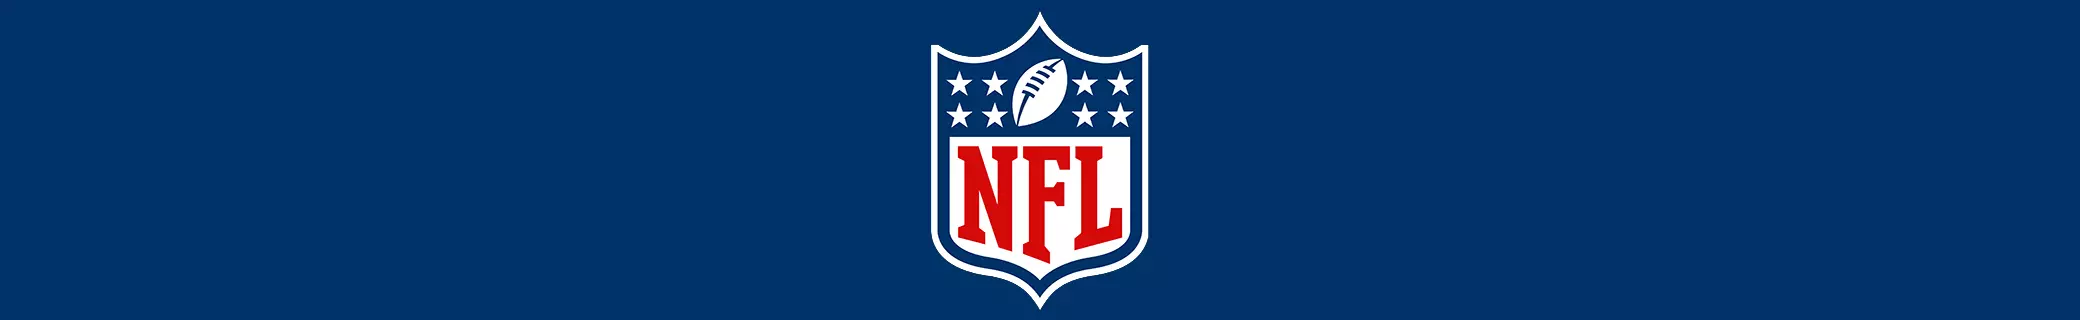 NFL i fjernsynet – Her kan du se alle NFL-kampene i TV